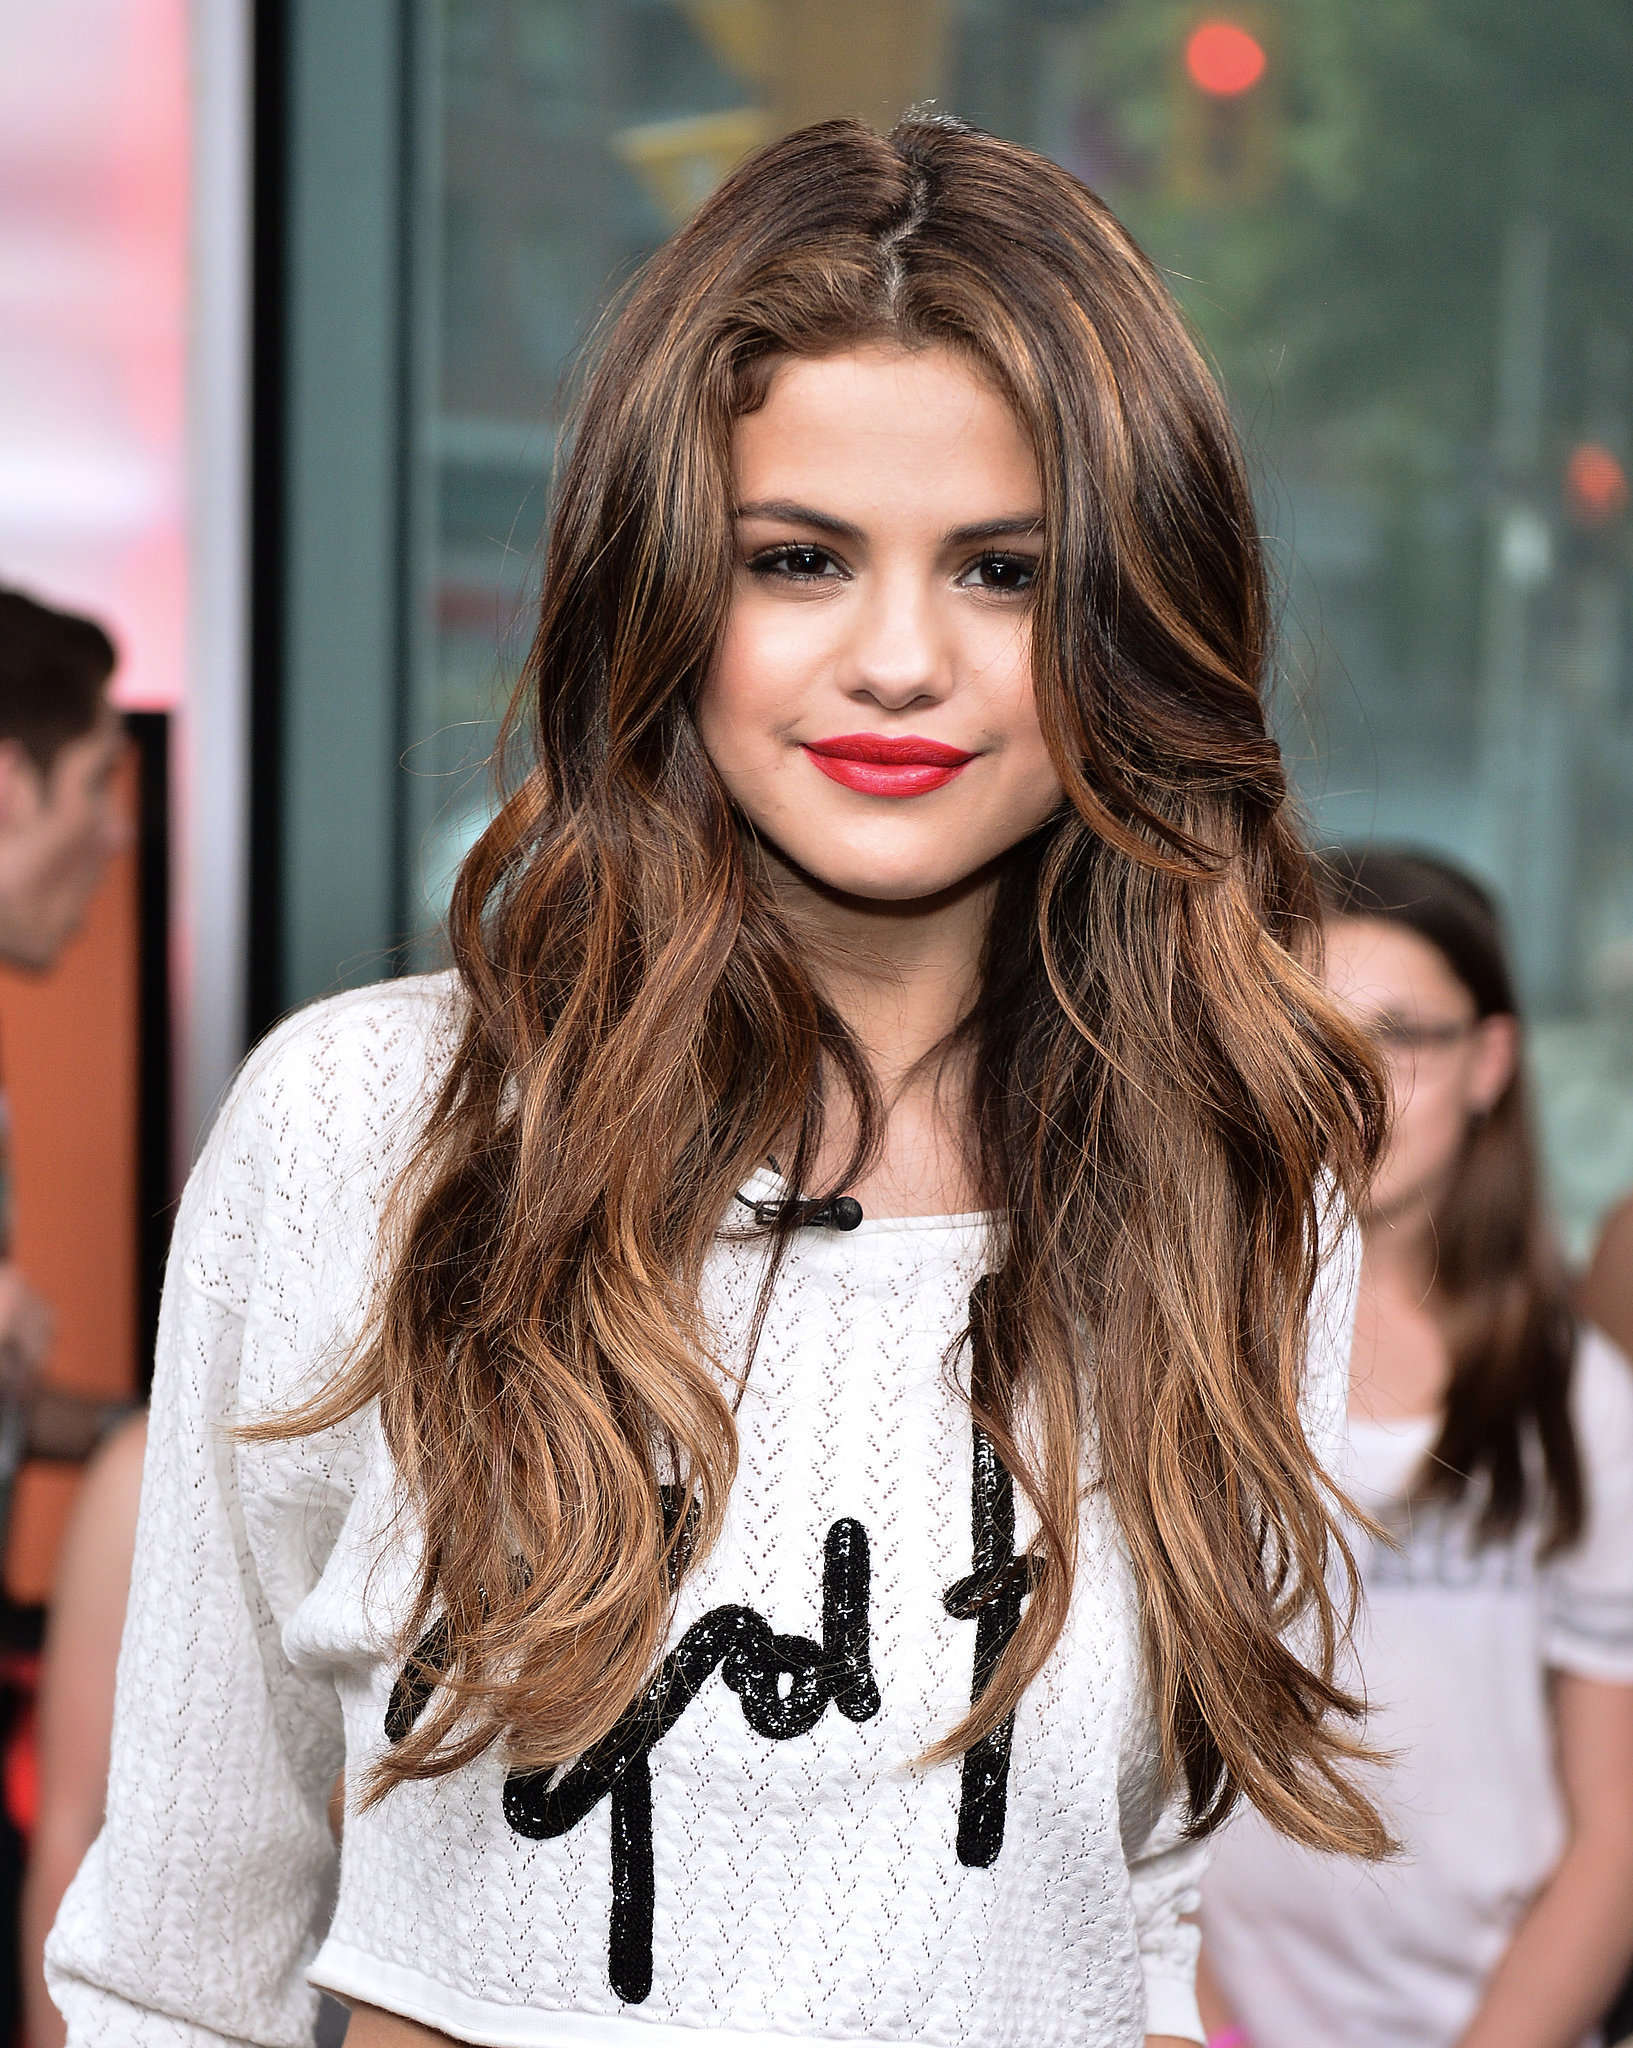 Top 10 Selena Gomez Pictures